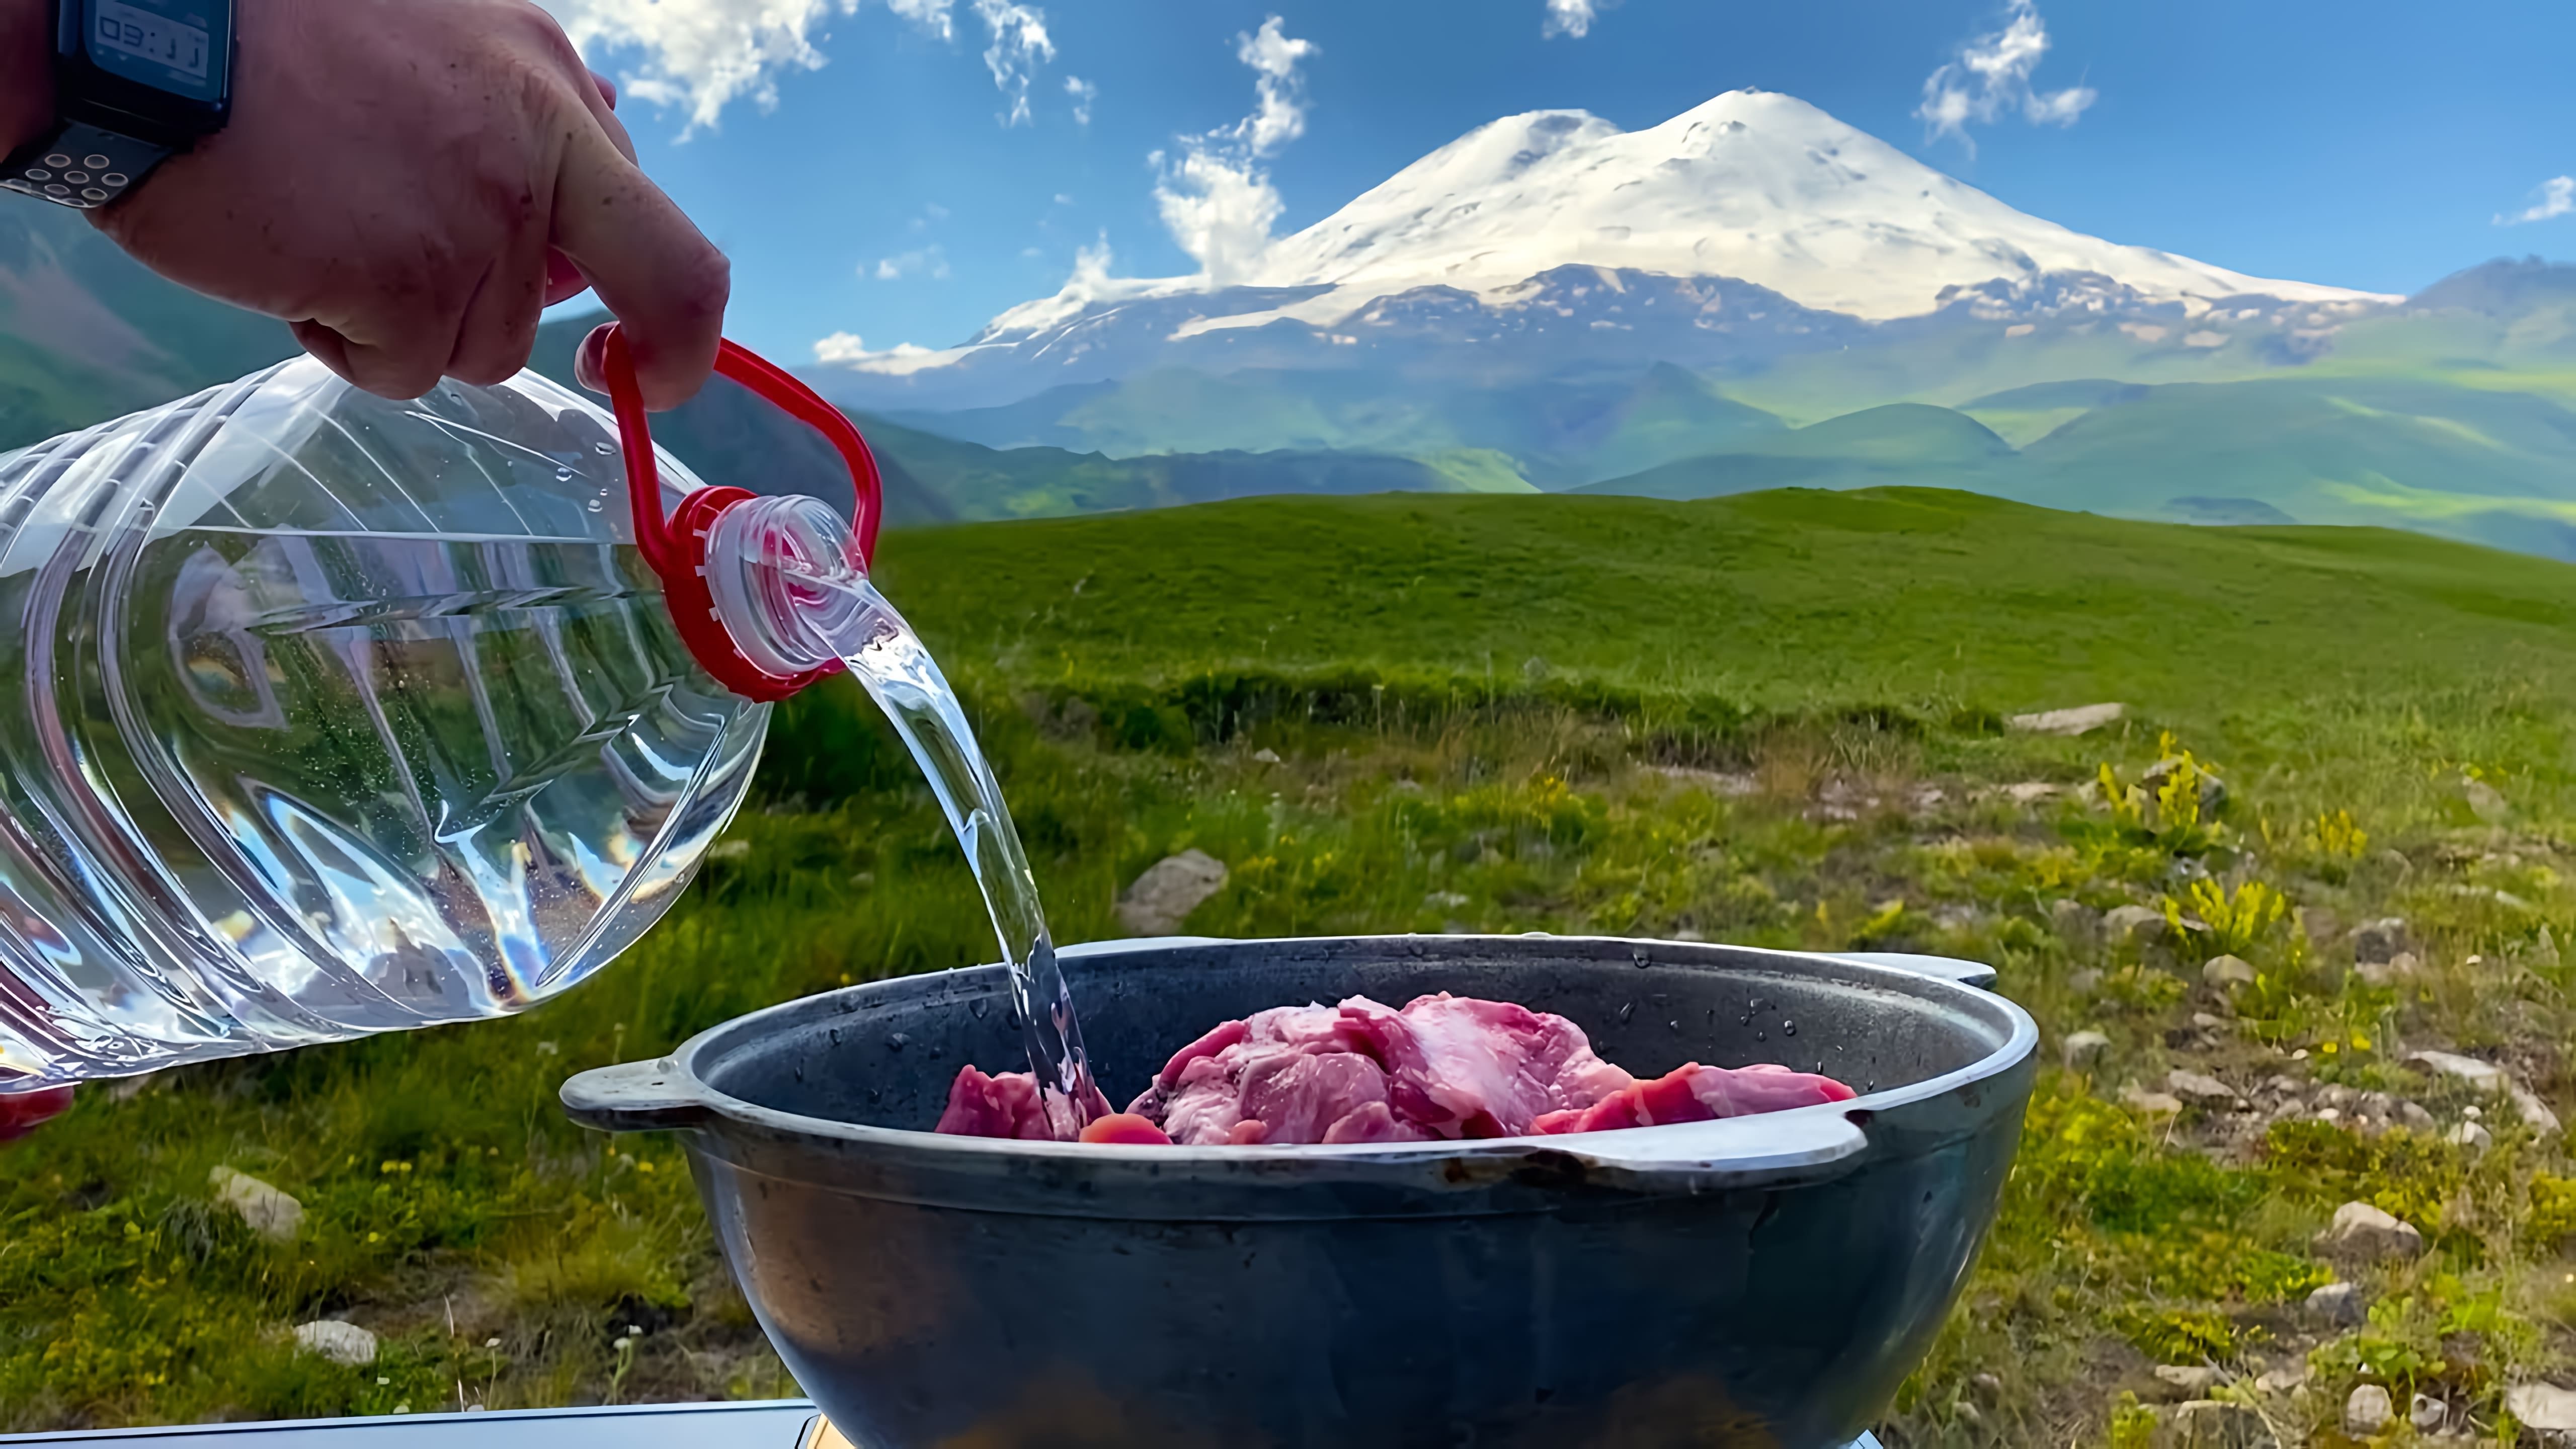 В этом видео-ролике мы готовим вкуснейшее национальное осетинское блюдо "Туйра" с видом на величественный Эльбрус